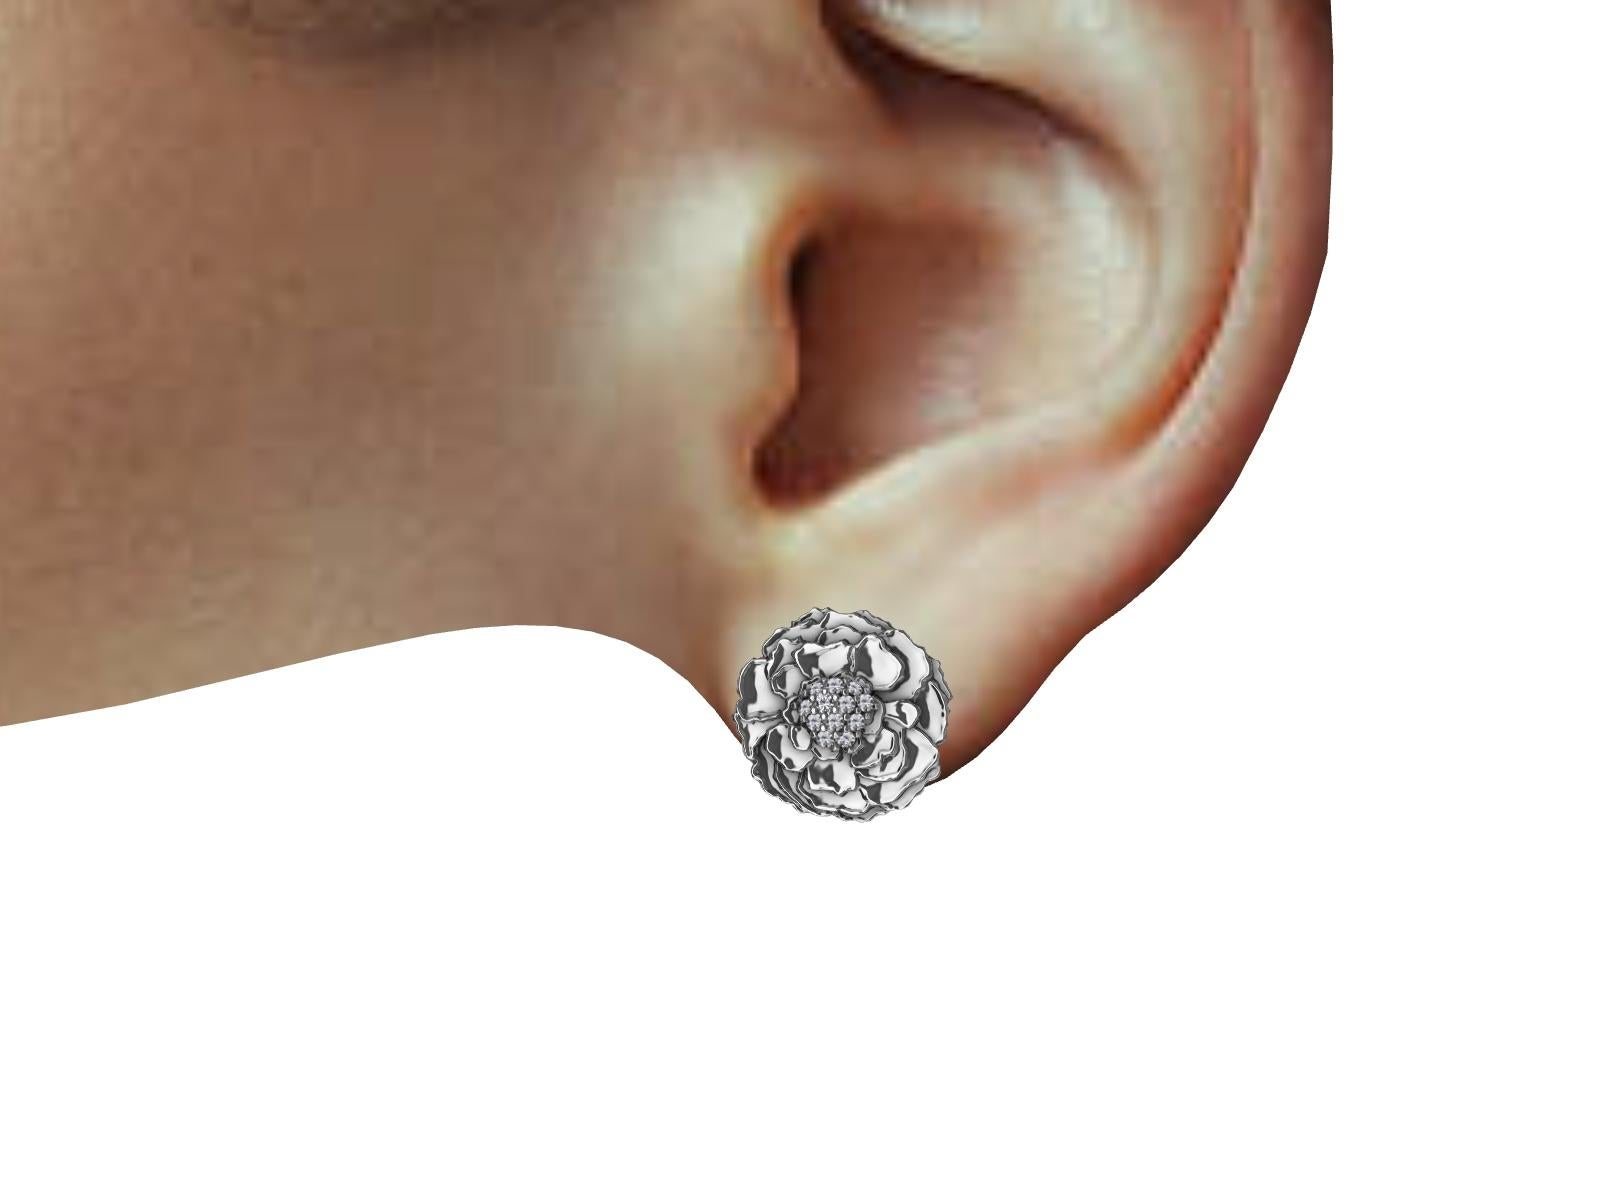 boucles d'oreilles en or blanc 18 carats avec diamants, les pétales de la fleur de souci. D'un de mes dessins imprimé en typographie.  5/8e de pouce x 7/16e de pouce  ou 14-15 mm de diamètre. diamants d'un poids de .281 carats, G, SI1.
Fabriqué sur